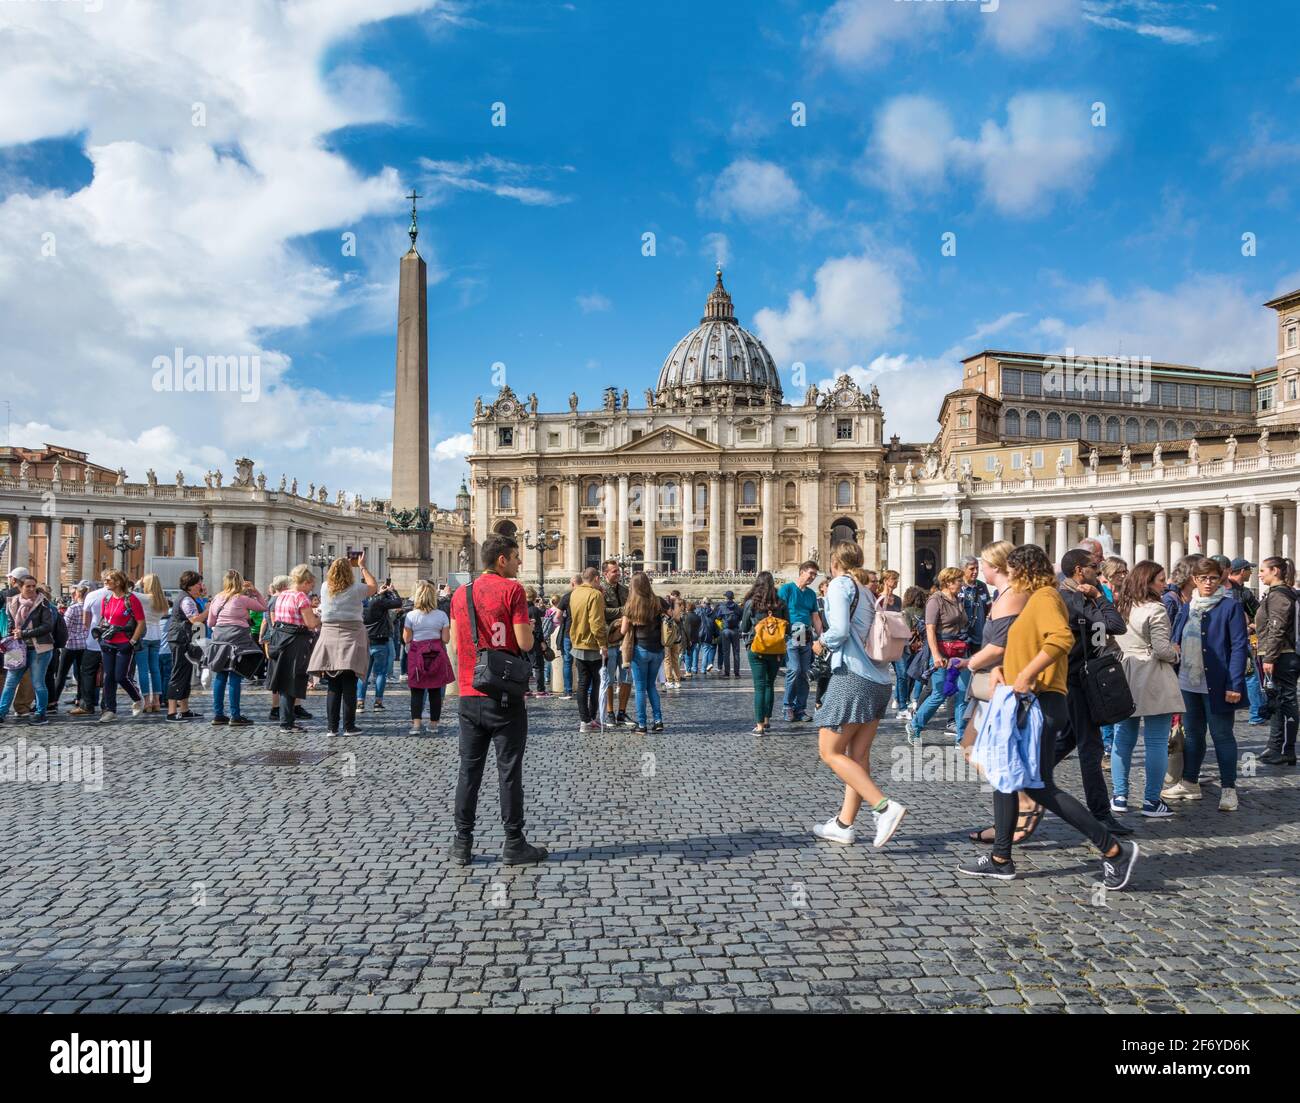 Vatican - 06 octobre 2018 : les touristes se bousculades autour de la place Saint-Pierre en face de la cathédrale Saint-Pierre Banque D'Images